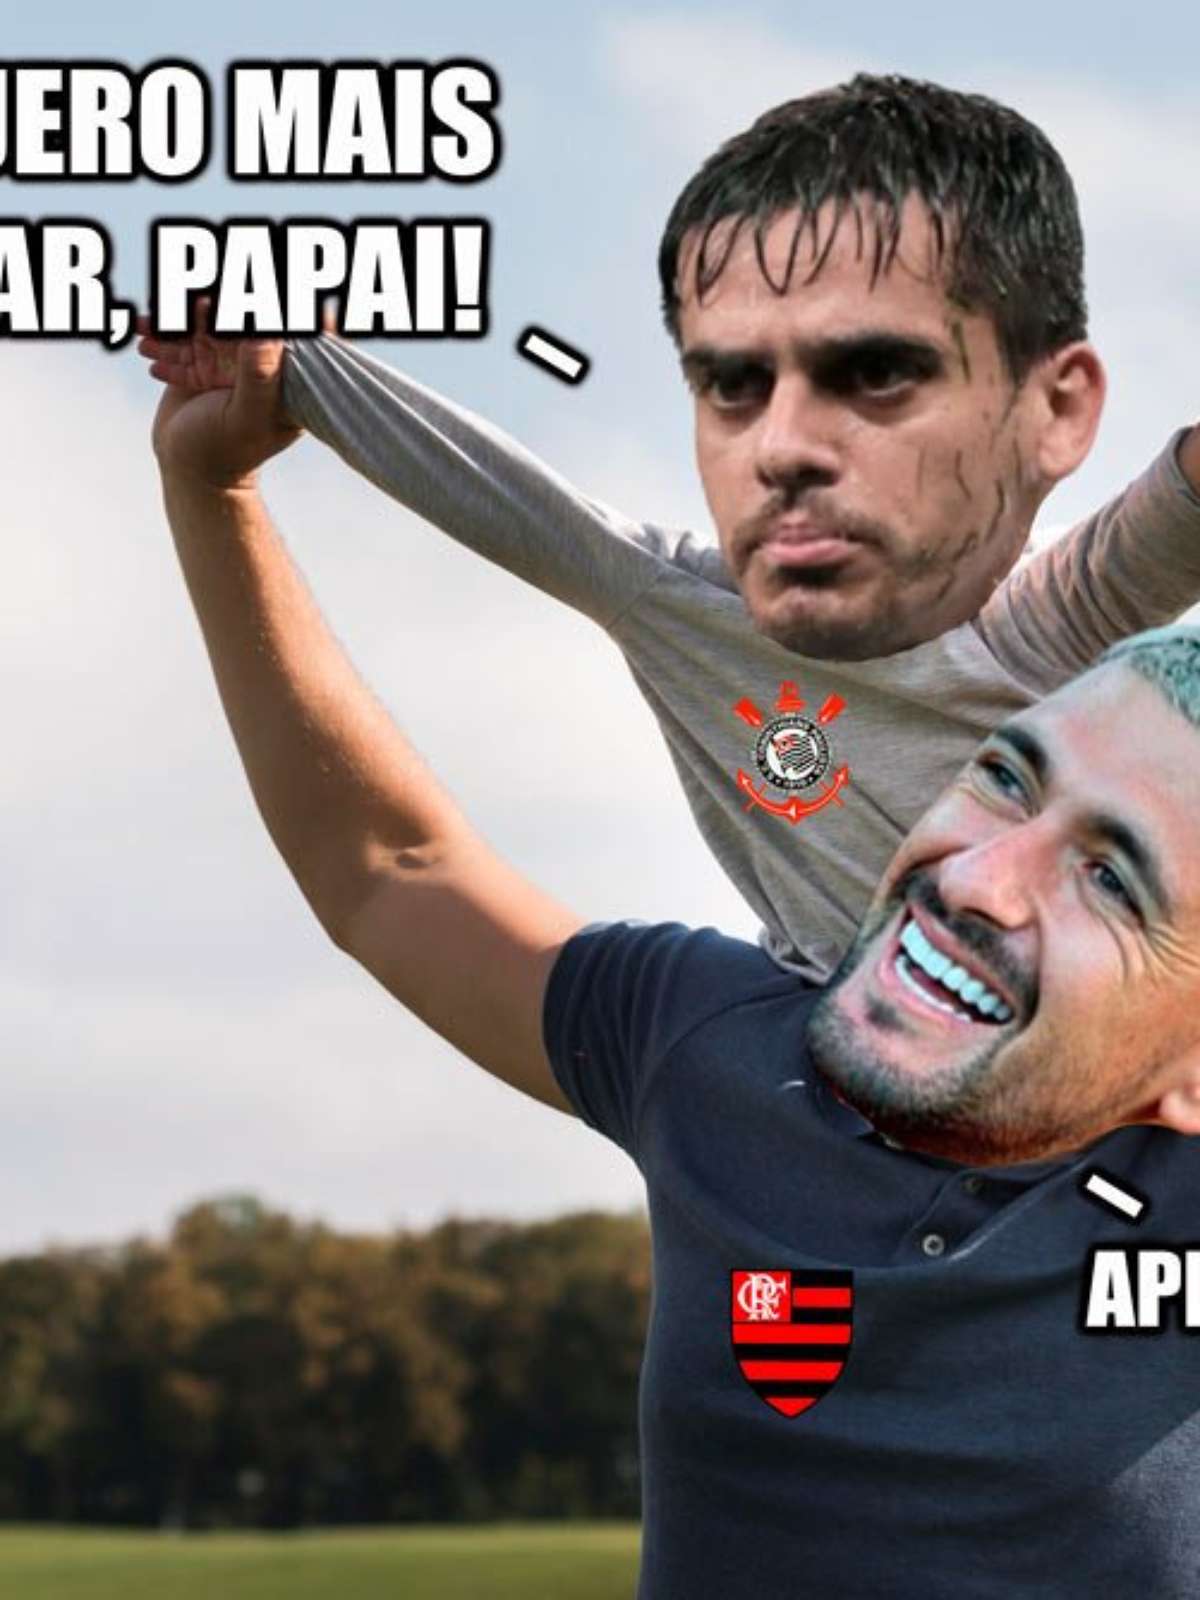 Corinthians x Flamengo: os memes do jogo em Itaquera - Gazeta